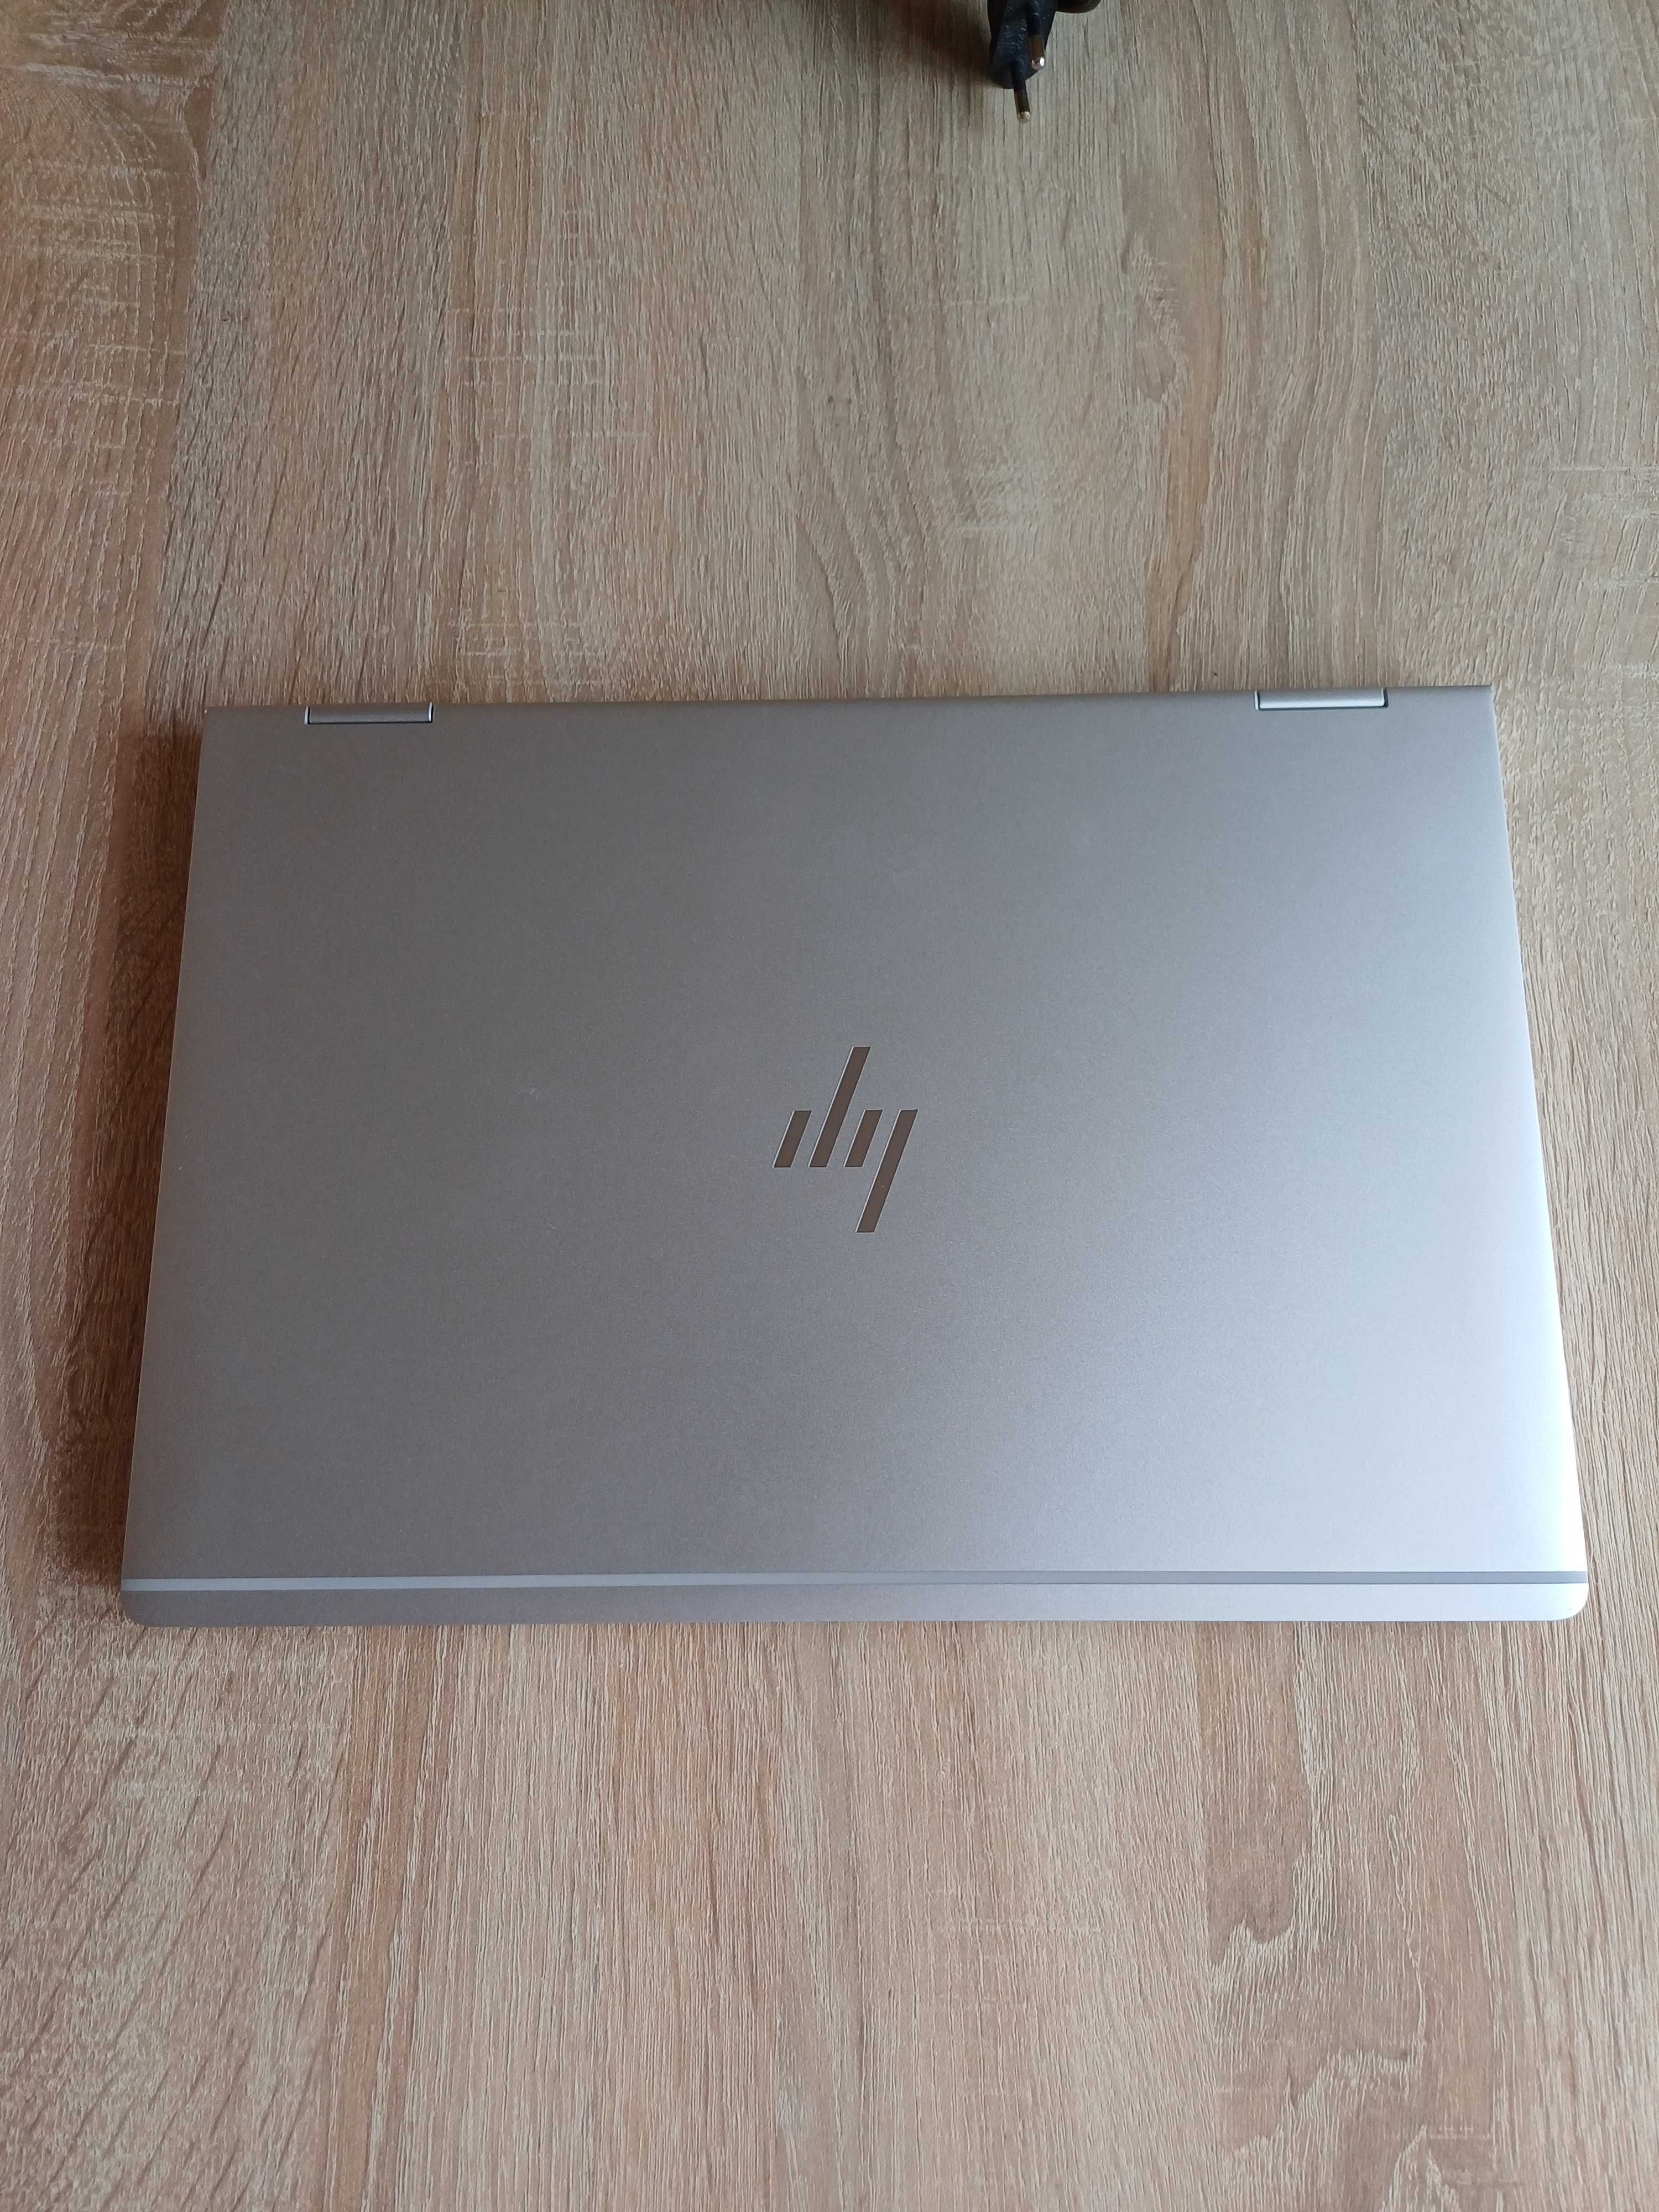 HP EliteBook Touchscreen